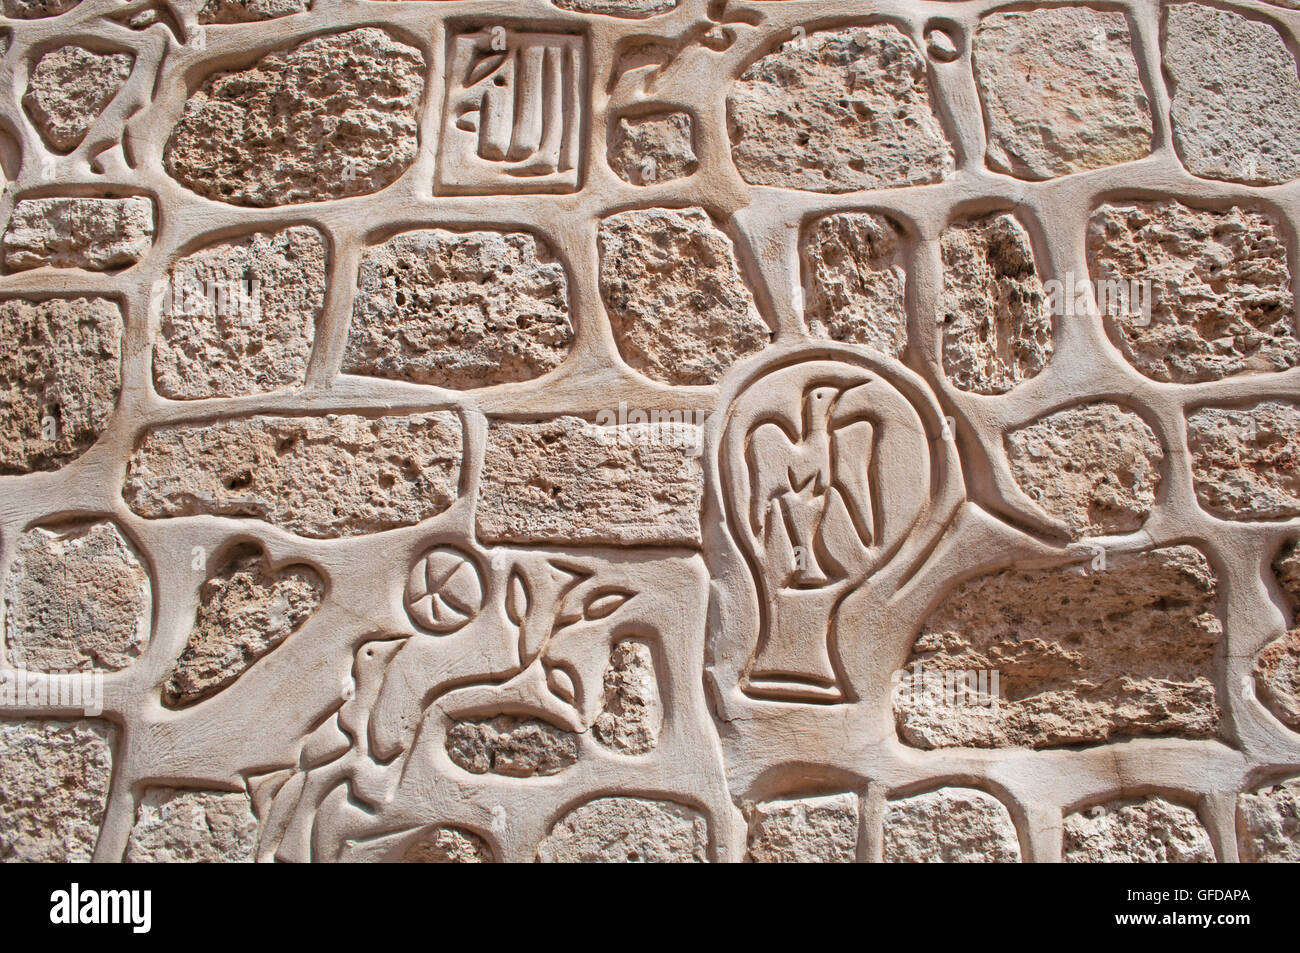 Gerusalemme: segni e simboli su una parete in corrispondenza dell'ingresso del Quartiere Armeno, uno dei 4 quartieri della città vecchia cinta di mura Foto Stock